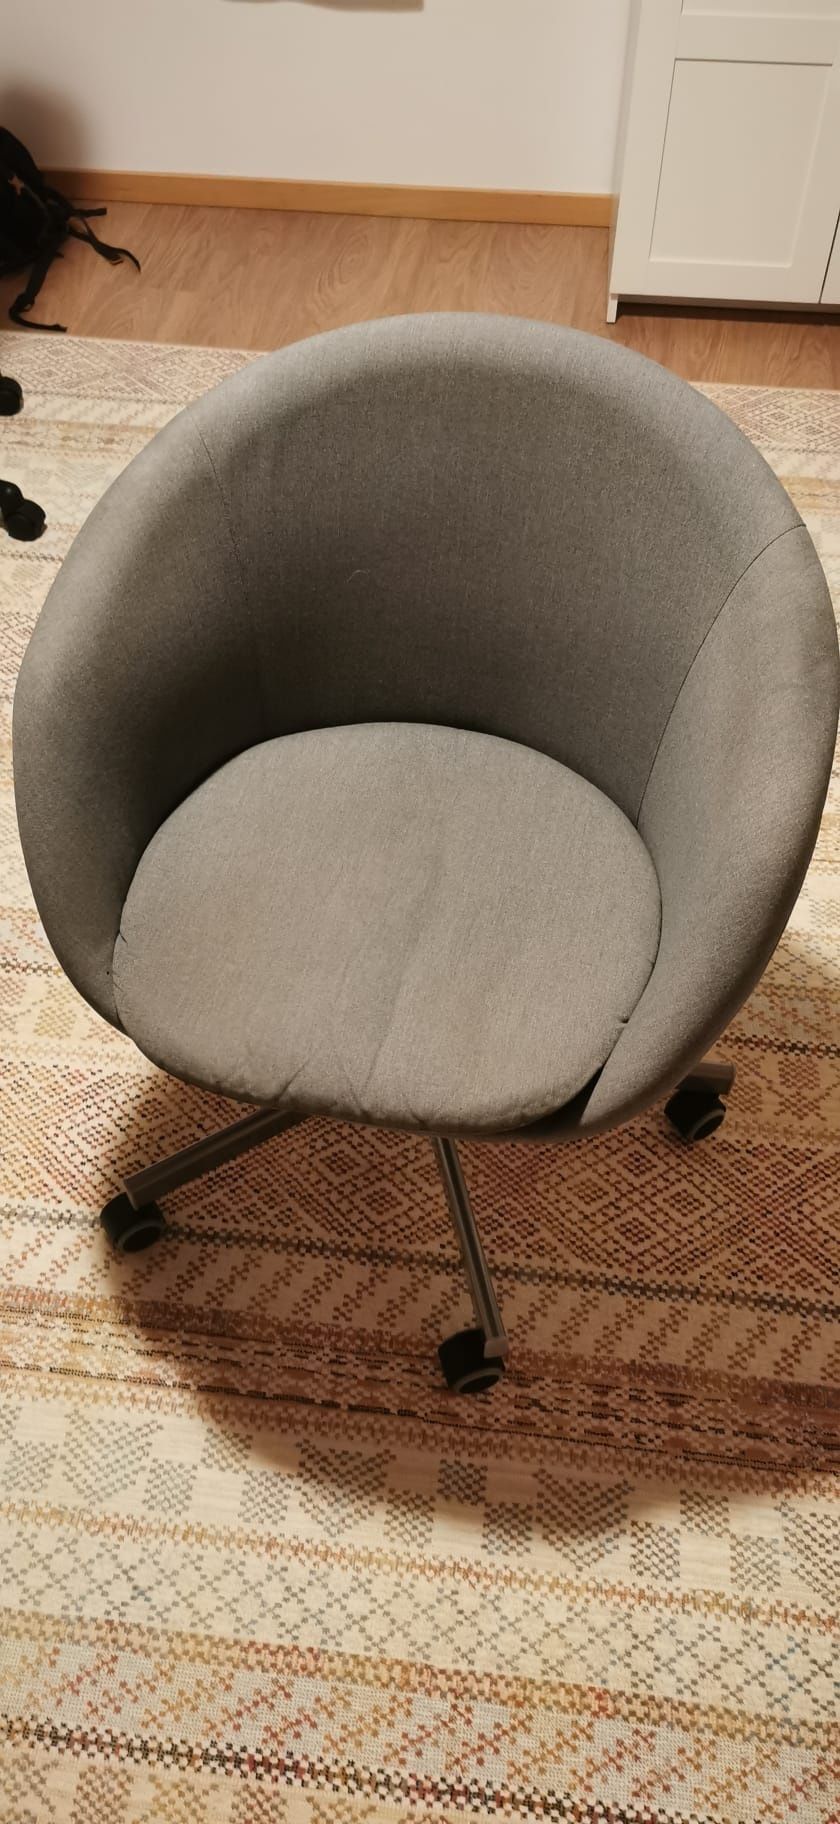 Cadeira de escritório IKEA cinzenta - SKRUVSTA - Bom estado